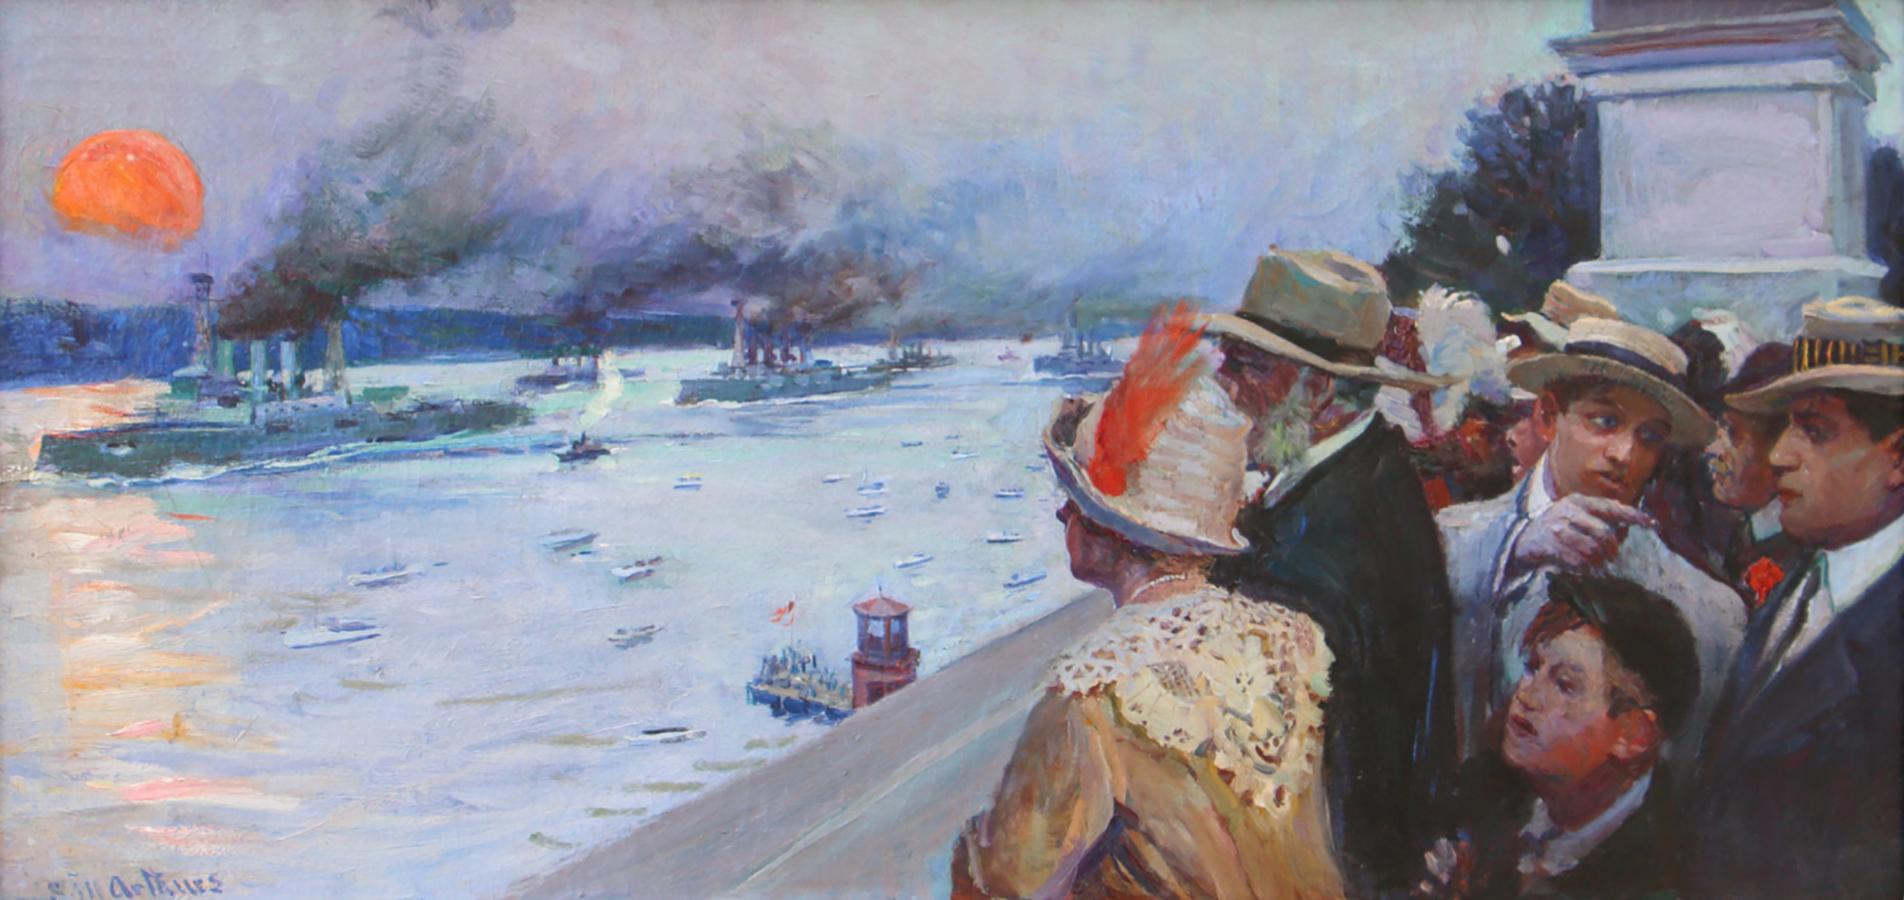 Landscape Painting Stanley Massey Arthurs - La flotte